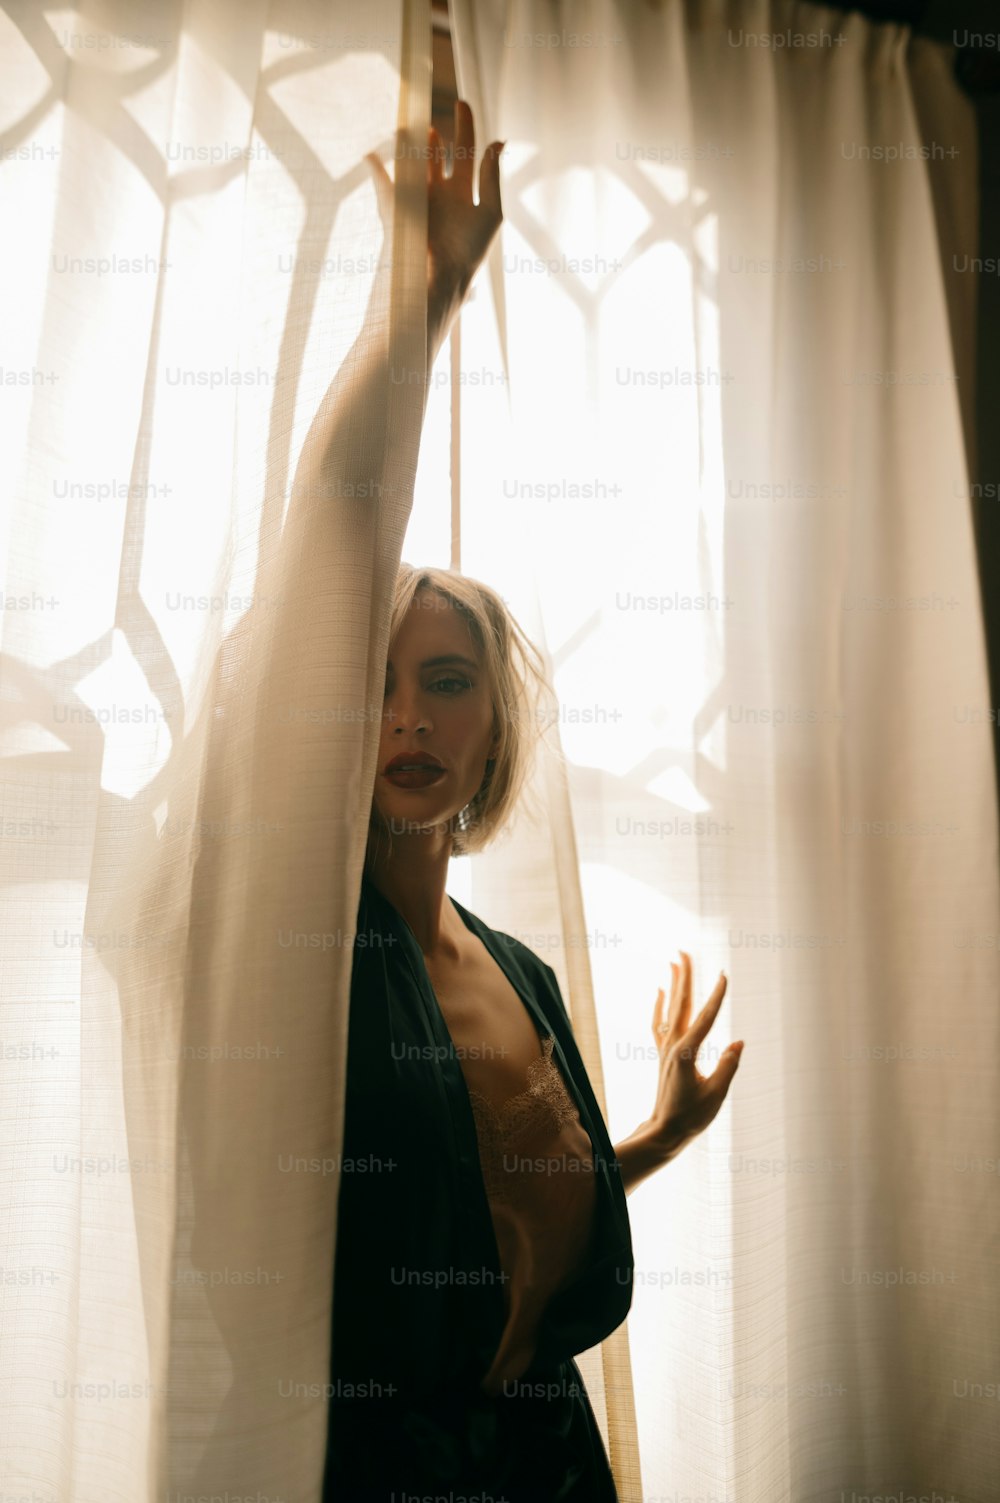 Una mujer parada frente a una ventana con cortinas transparentes